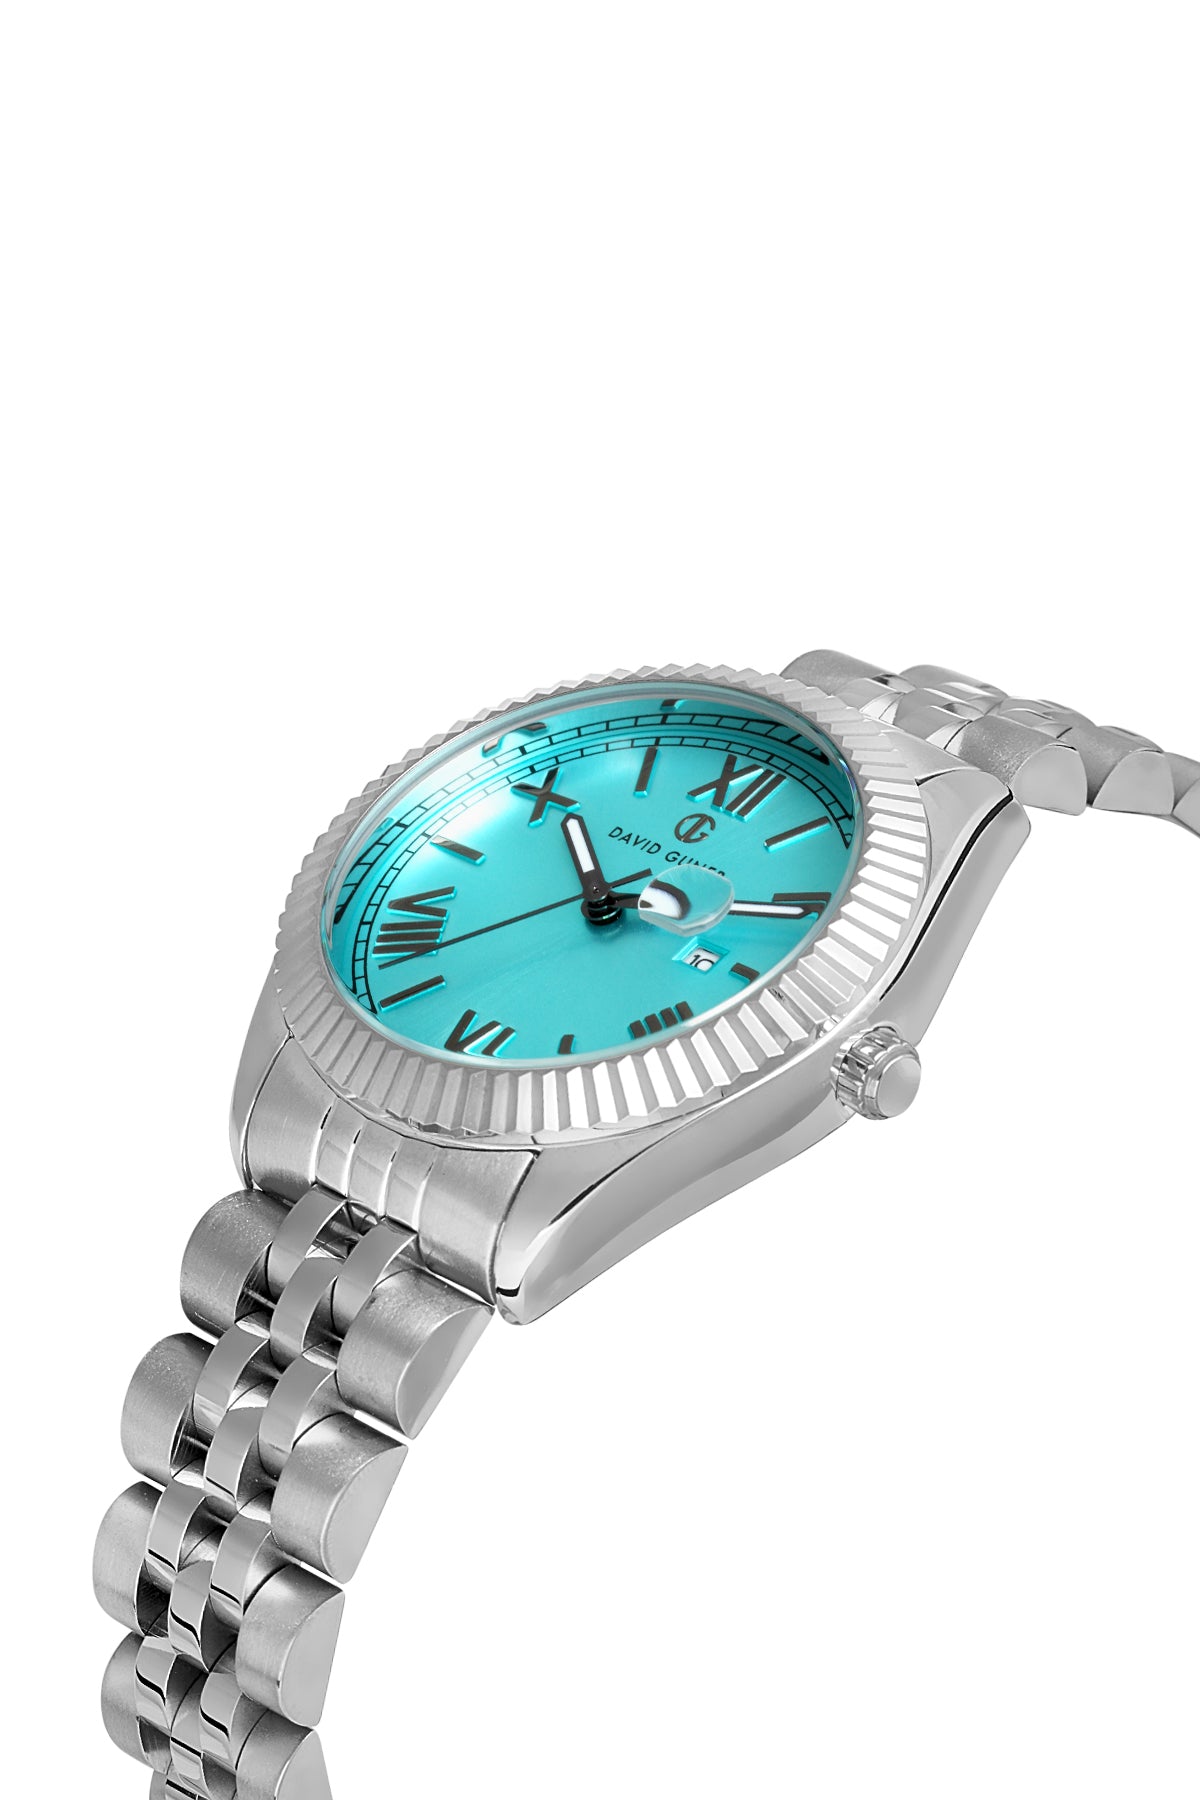 DAVID GUNER Turquoise Dial Women's Wristwatch